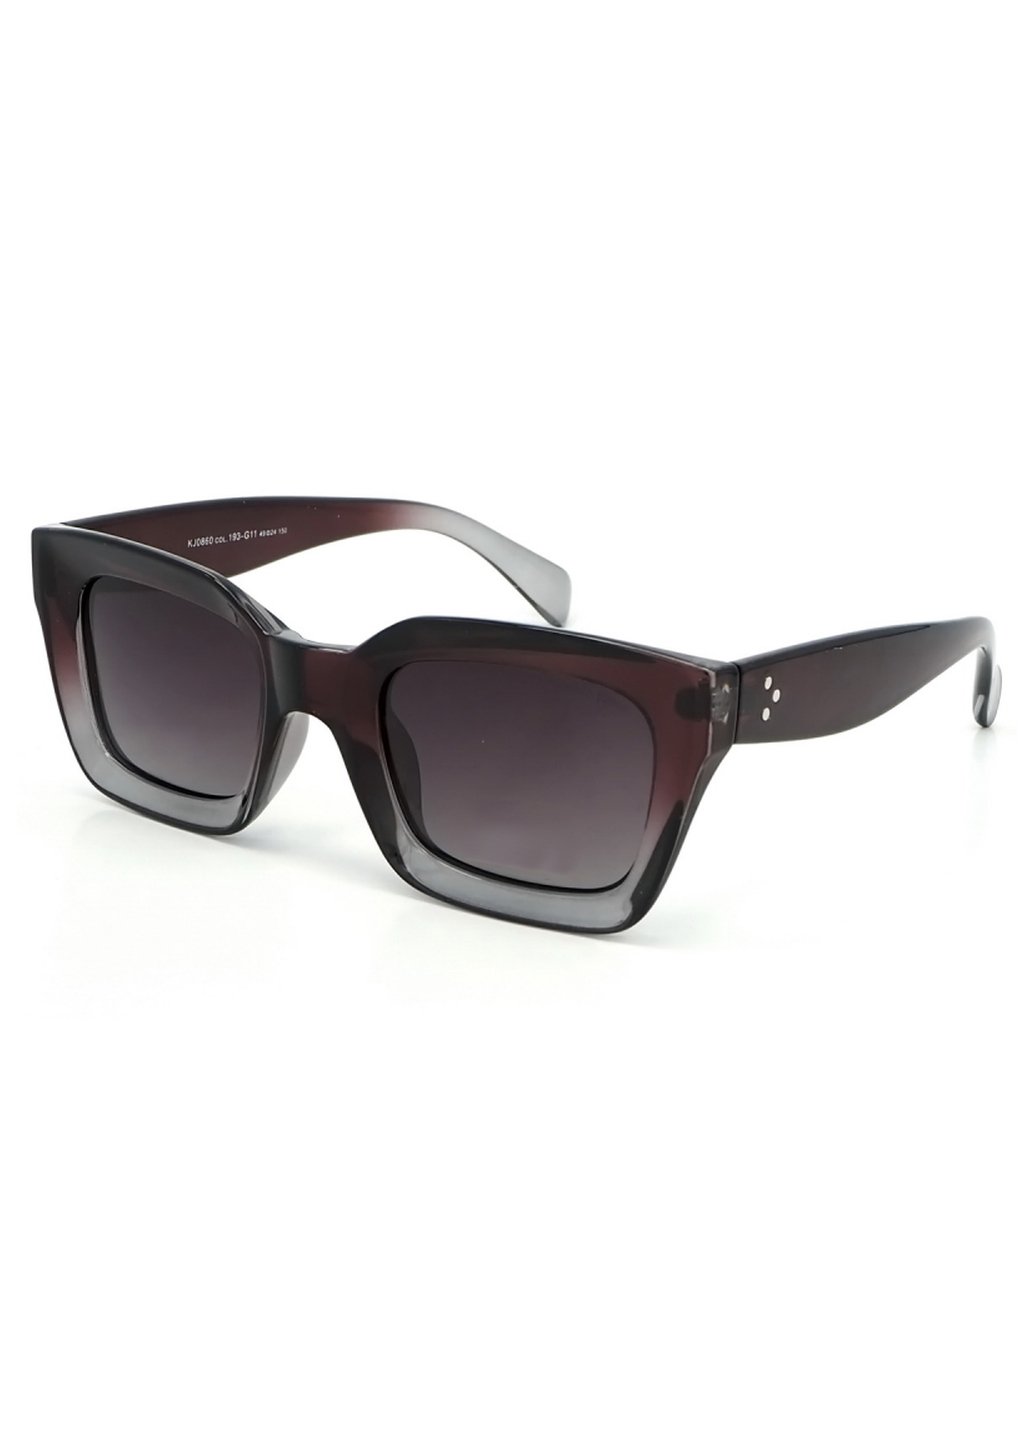 Купить Женские солнцезащитные очки Katrin Jones с поляризацией KJ0860 180046 - Серый в интернет-магазине